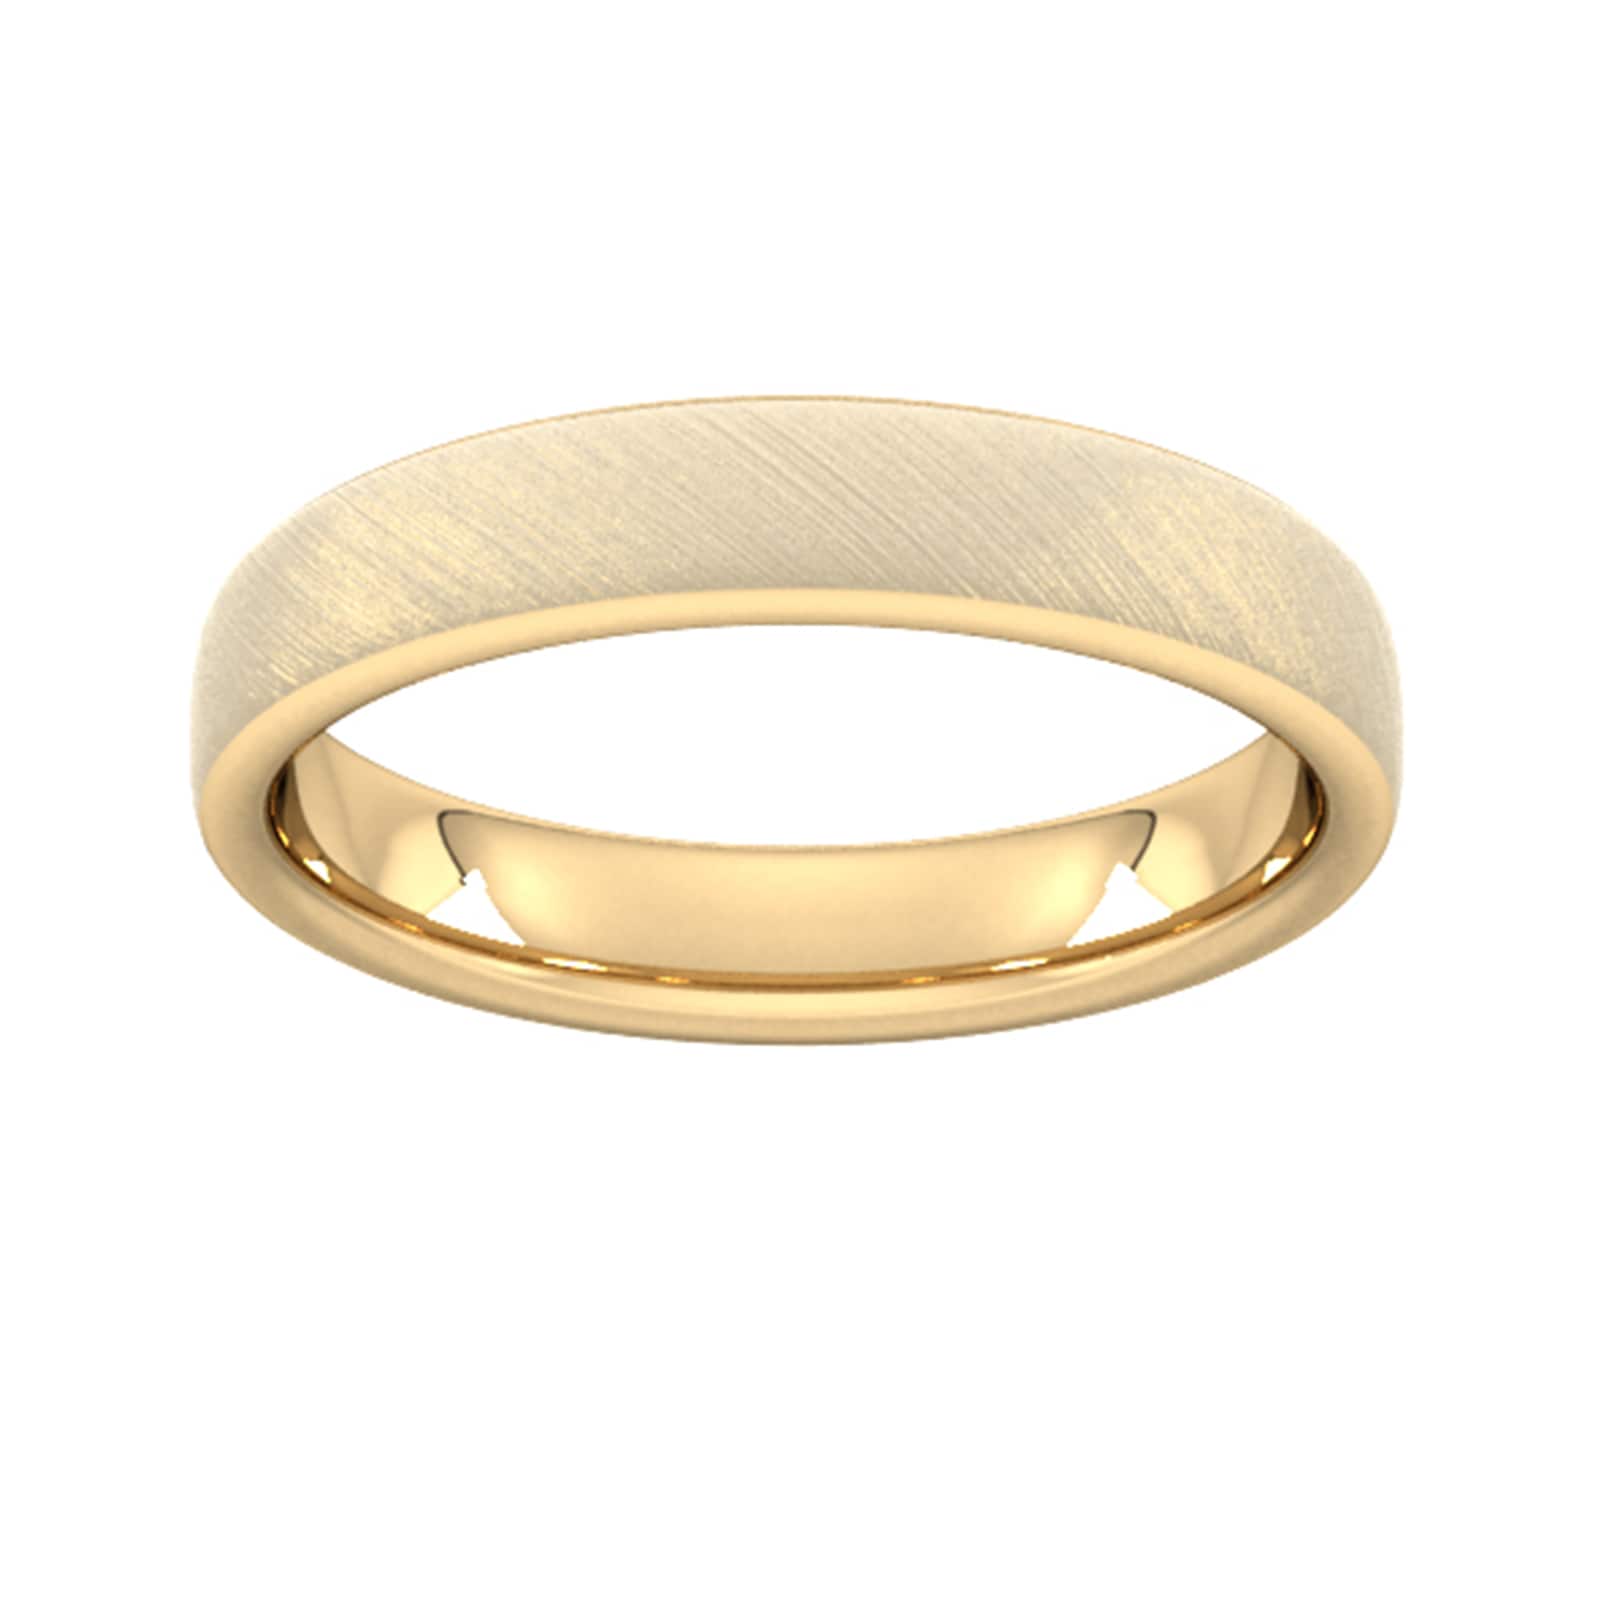 4mm D Shape Heavy Diagonal Matt Finish Wedding Ring In 9 Carat Yellow Gold - Ring Size S